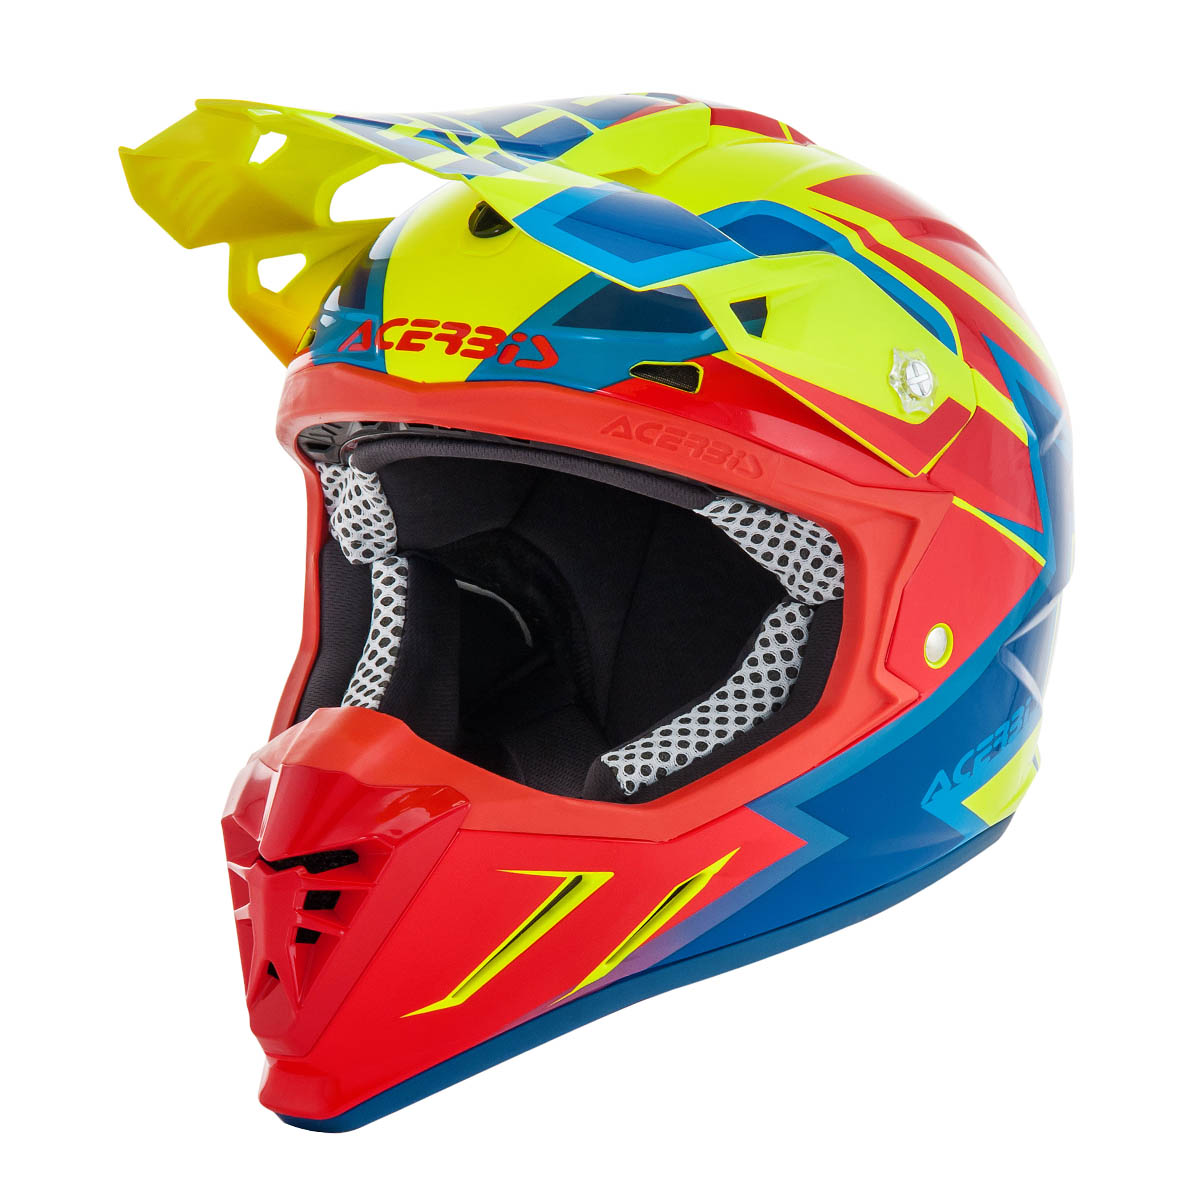 Acerbis Helmet Profile 3.0 S Fluo Yellow/Red